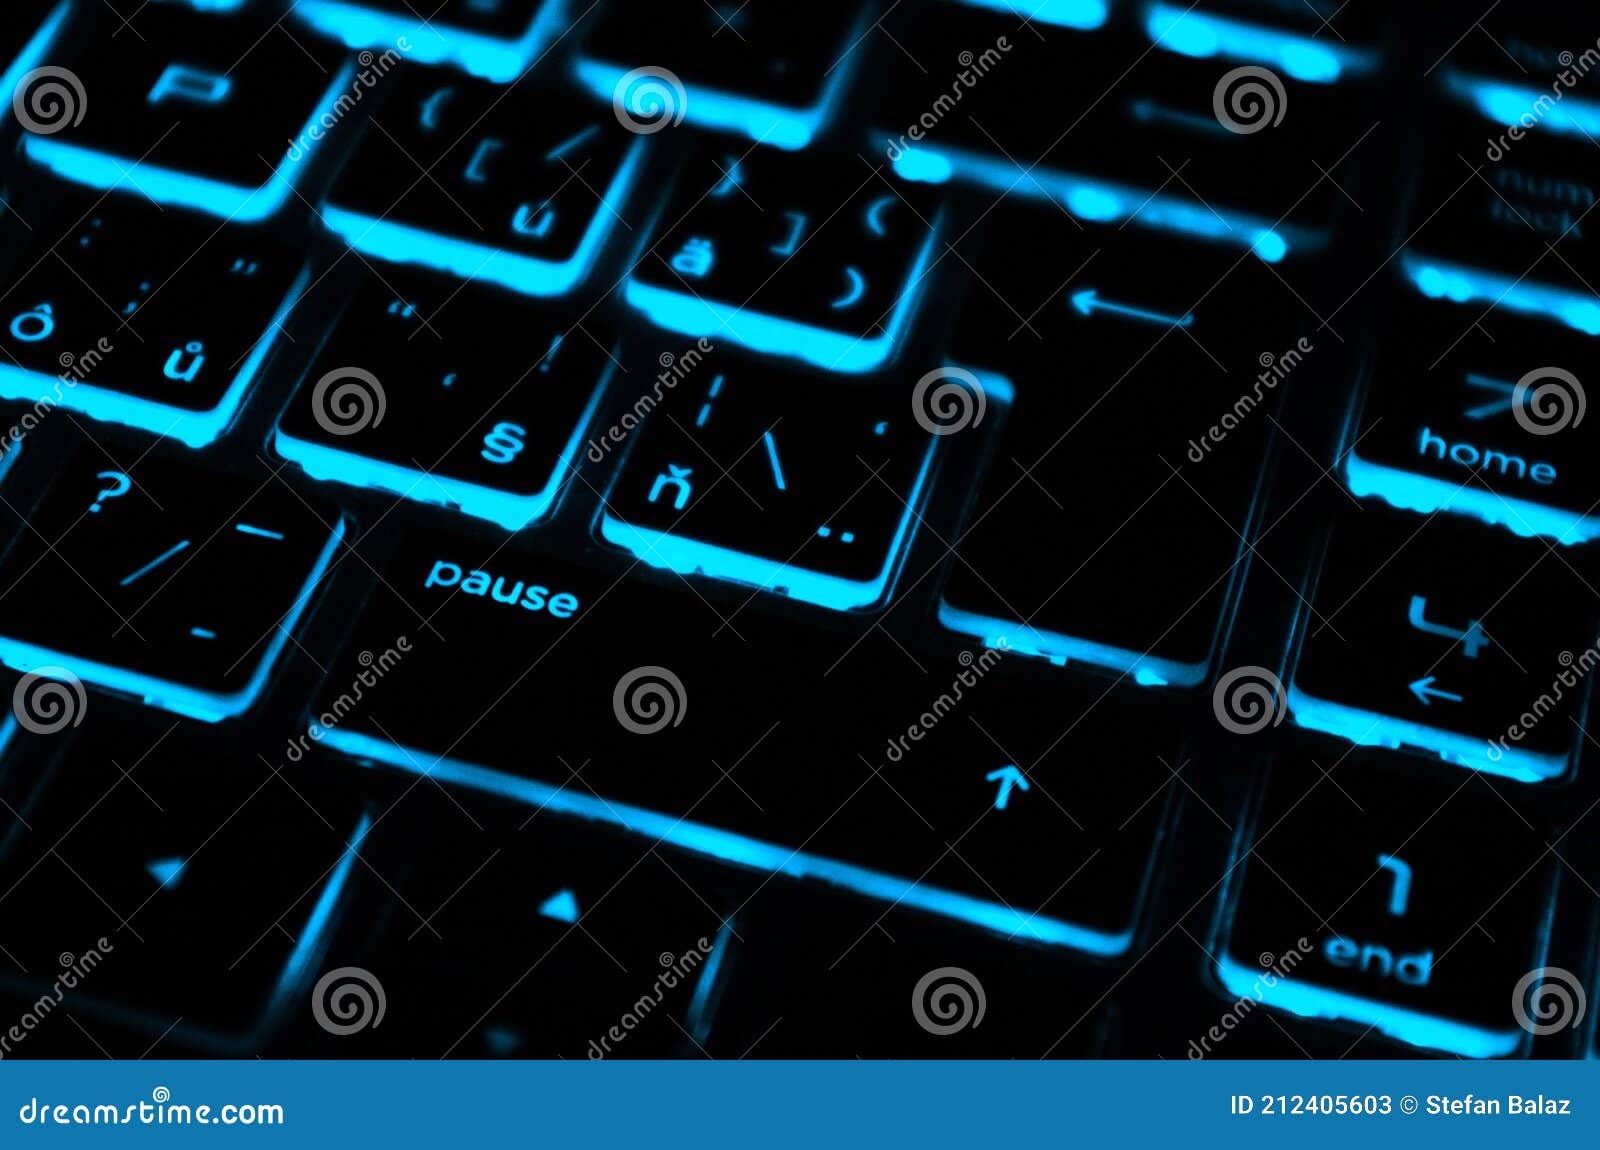 Moderno Azul Retroiluminado Teclado Retroiluminado Azul Retroiluminado Retroiluminado En Laptop O Keyboradataque Ciberné Imagen de archivo - Imagen de workplace, banca: 212405603